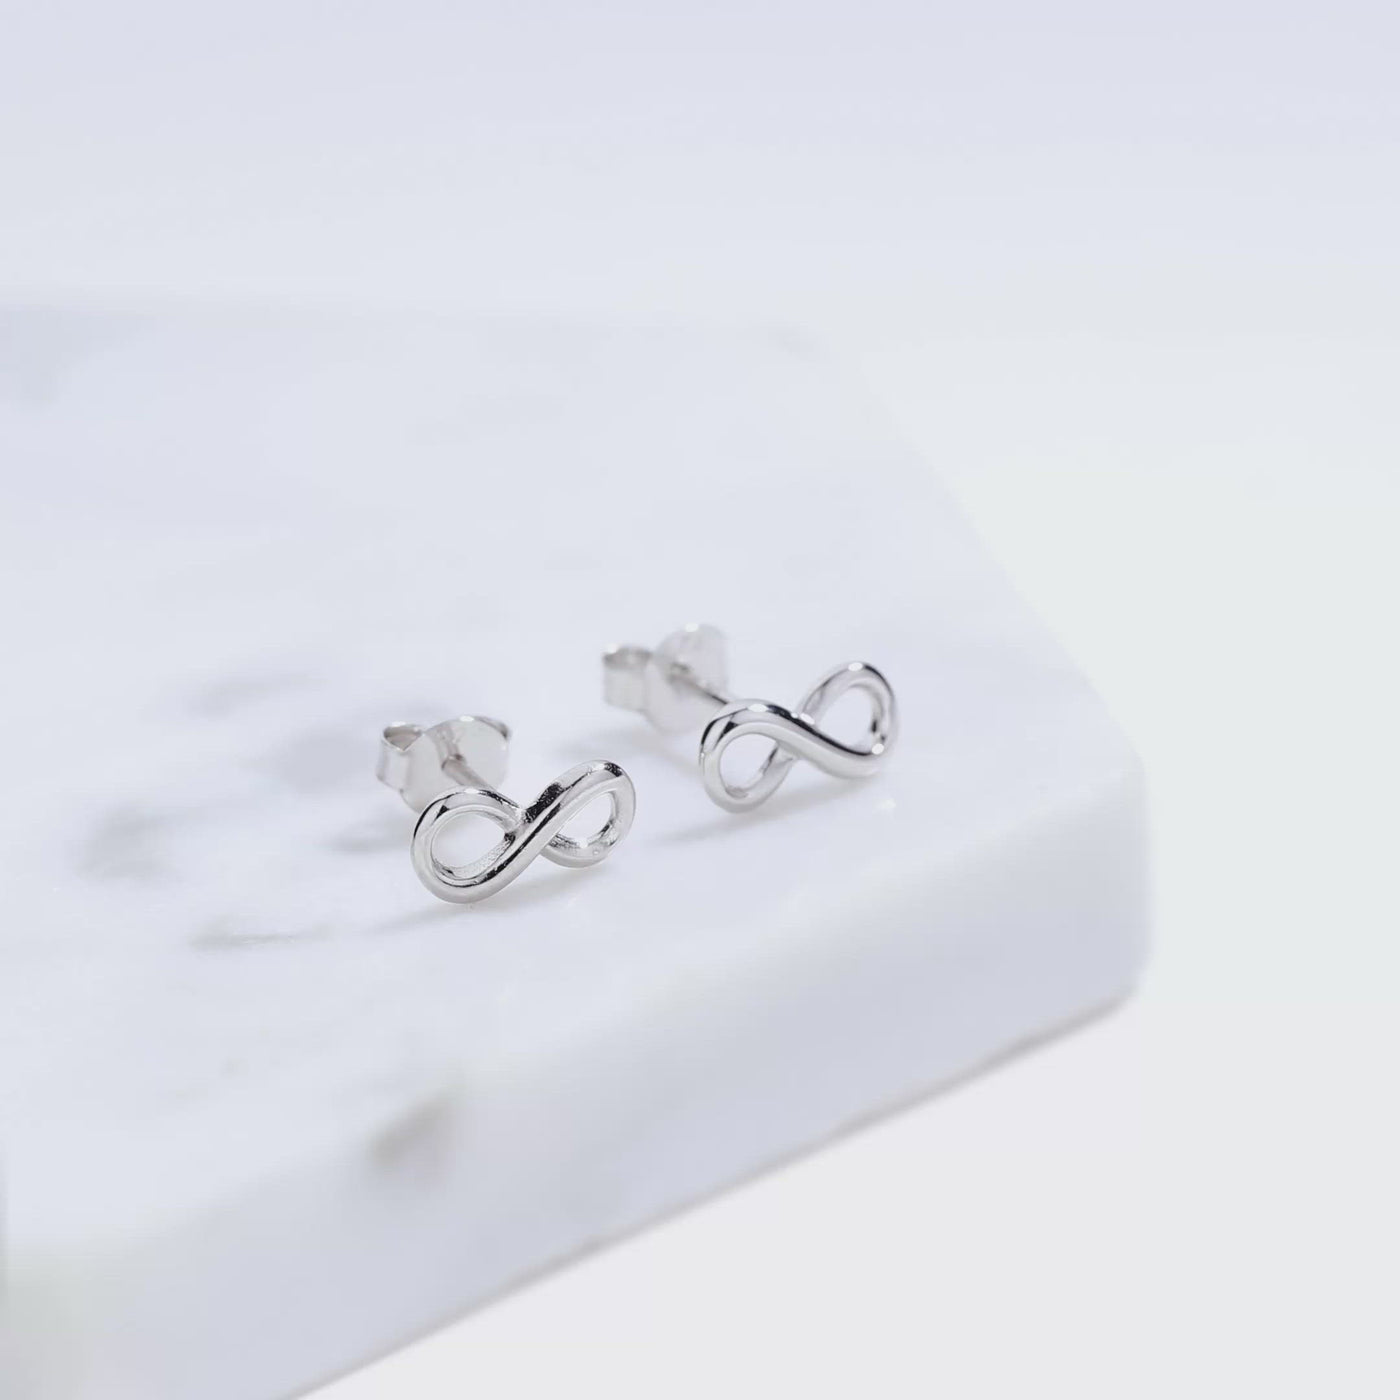 Plain Silver Infinity Earrings